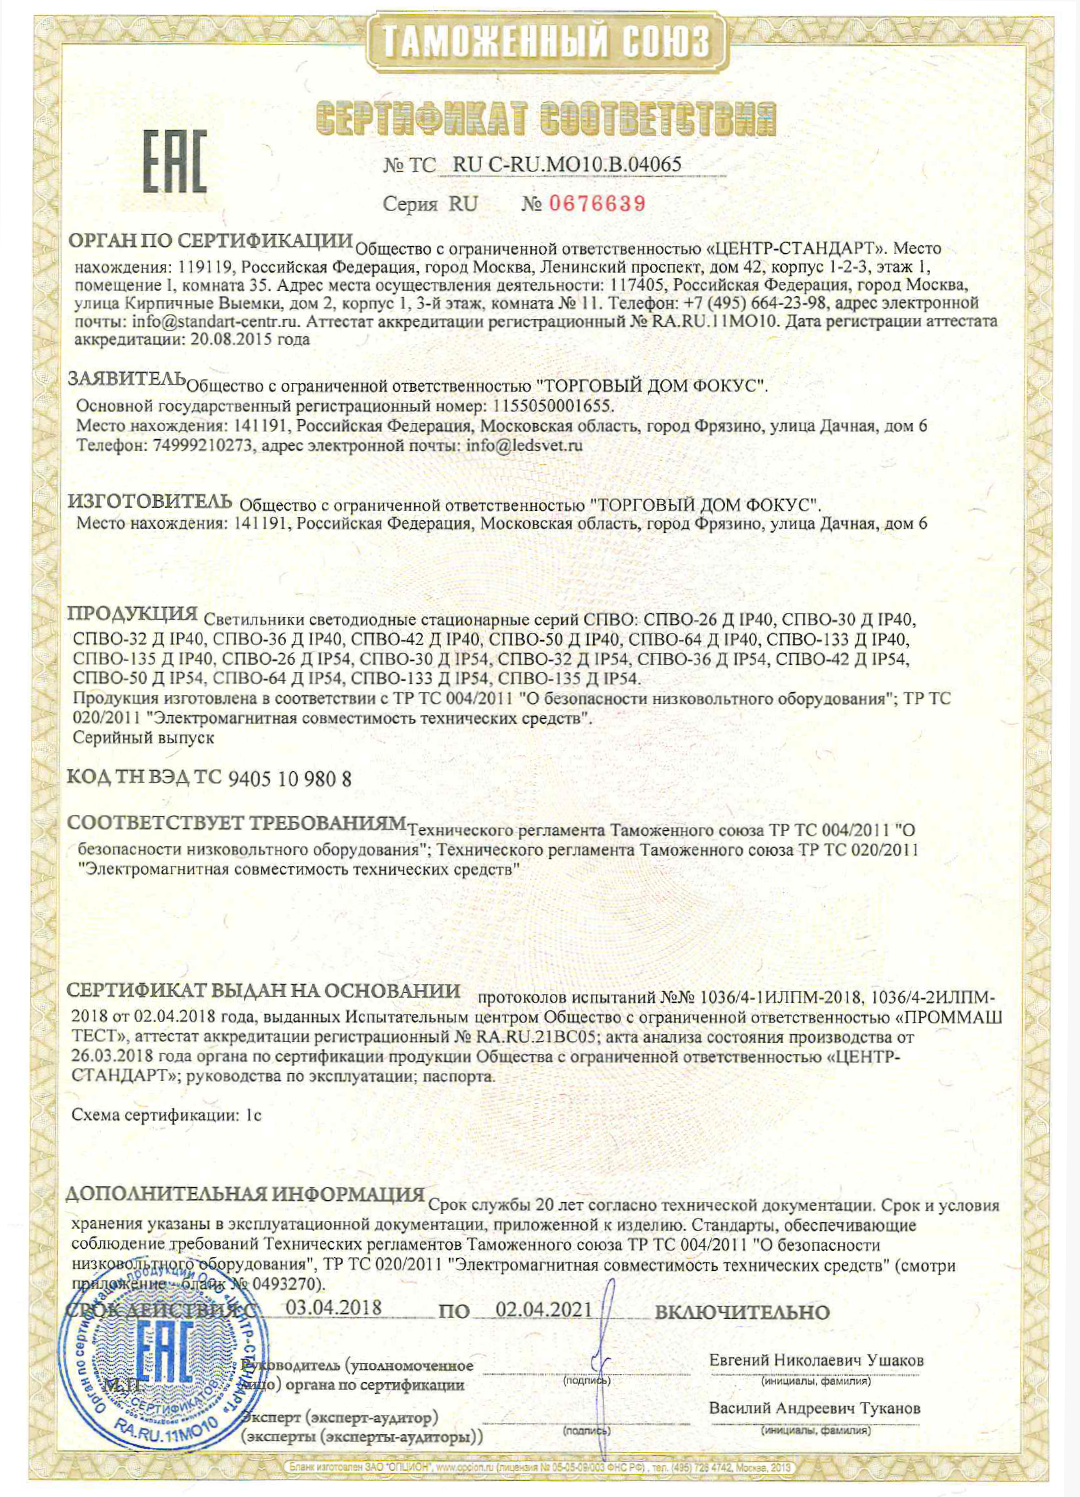 Сертификат соответствия Таможенного союза на светильники СПВО